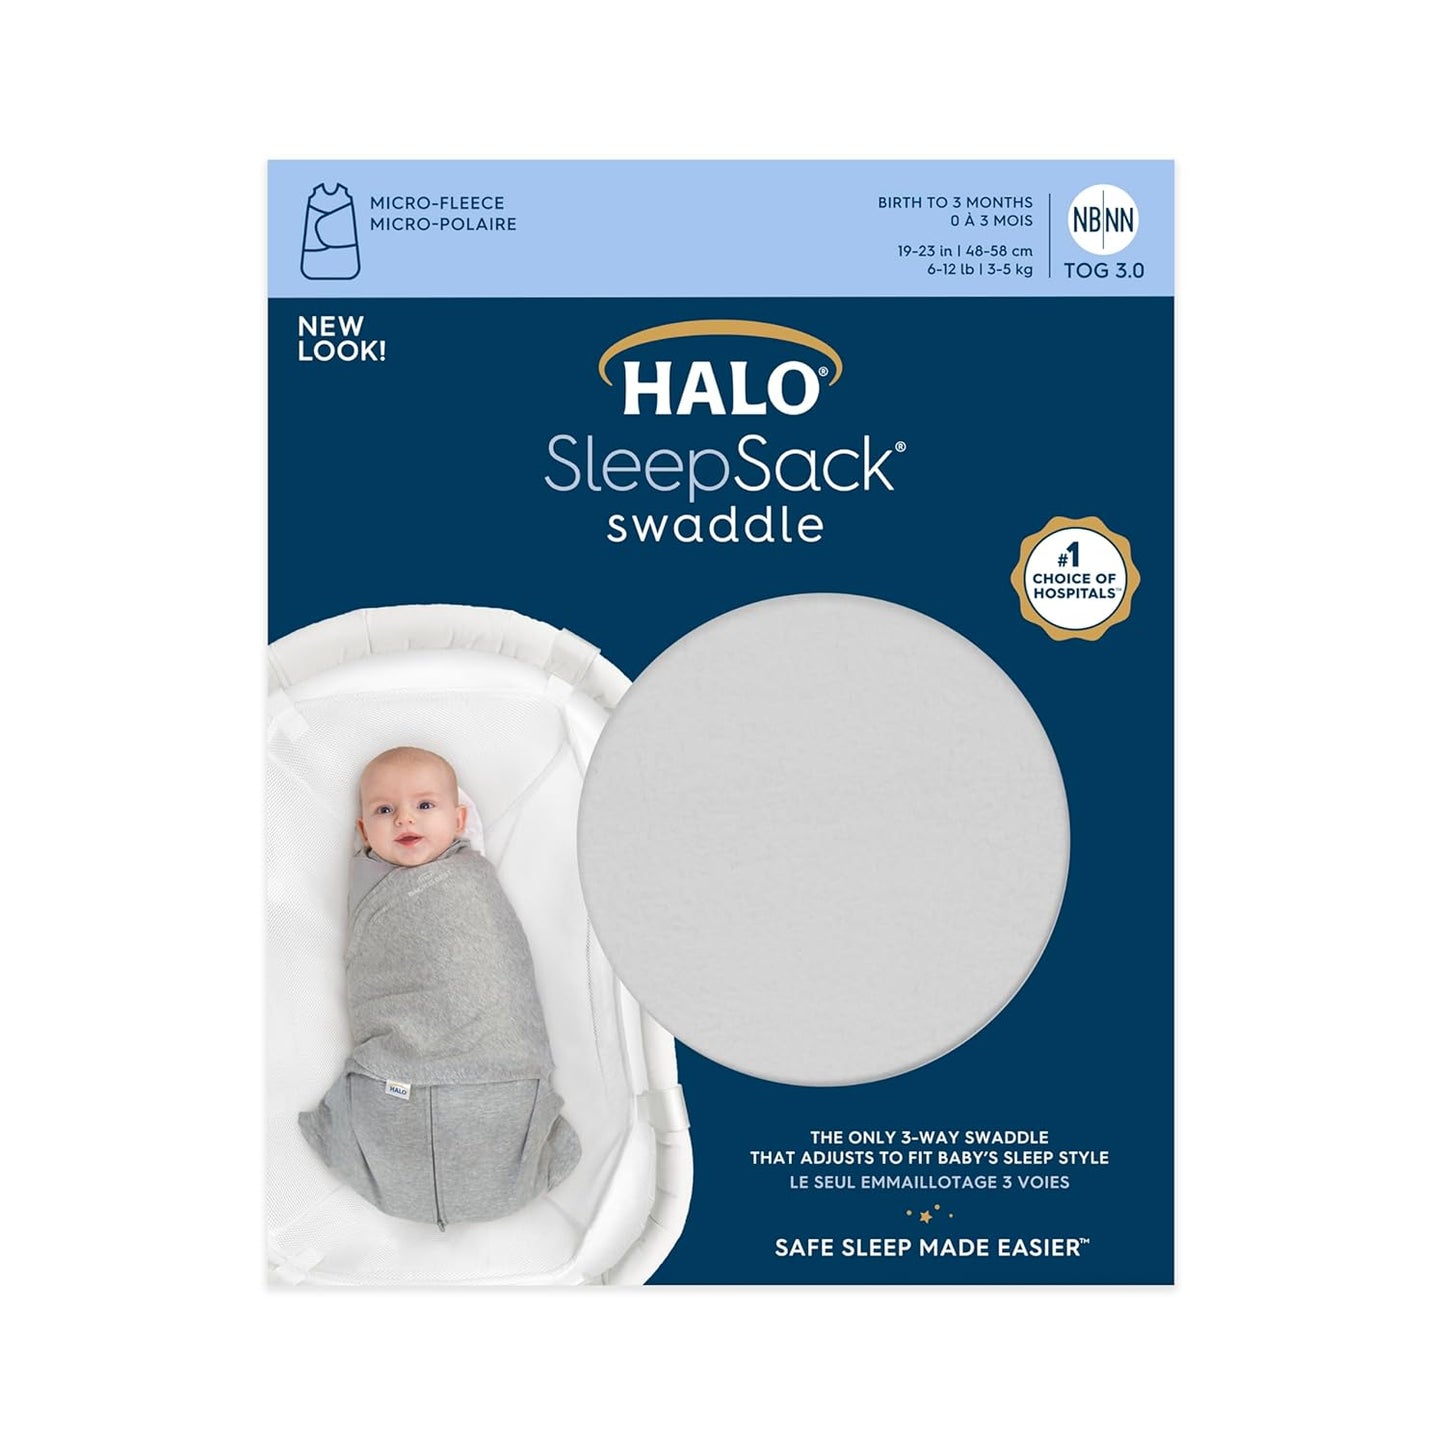 HALO Sleepsack Swaddle, 3-Way Adjustable Wearable Blanket, TOG 3.0, Velboa Plush Dots, Cream, Newborn, 0-3 Months